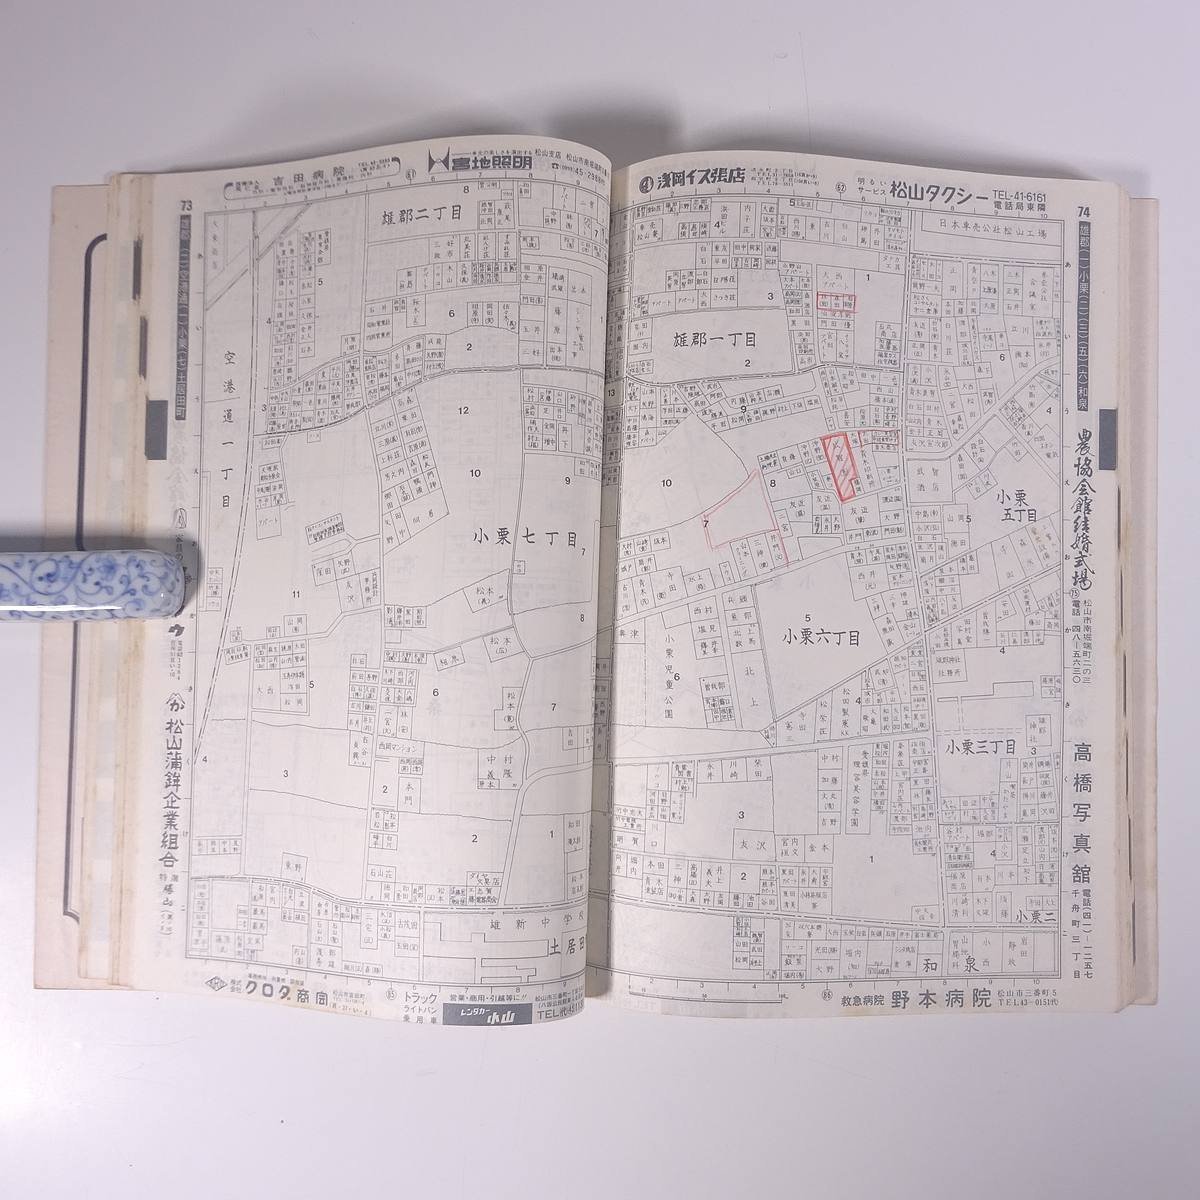 セイコー社版 愛媛県 松山市住宅地図 全国航空測量地図出版協同組合 四国地図出版株式会社 1975 大型本 住宅地図 B5サイズ ※書込少々